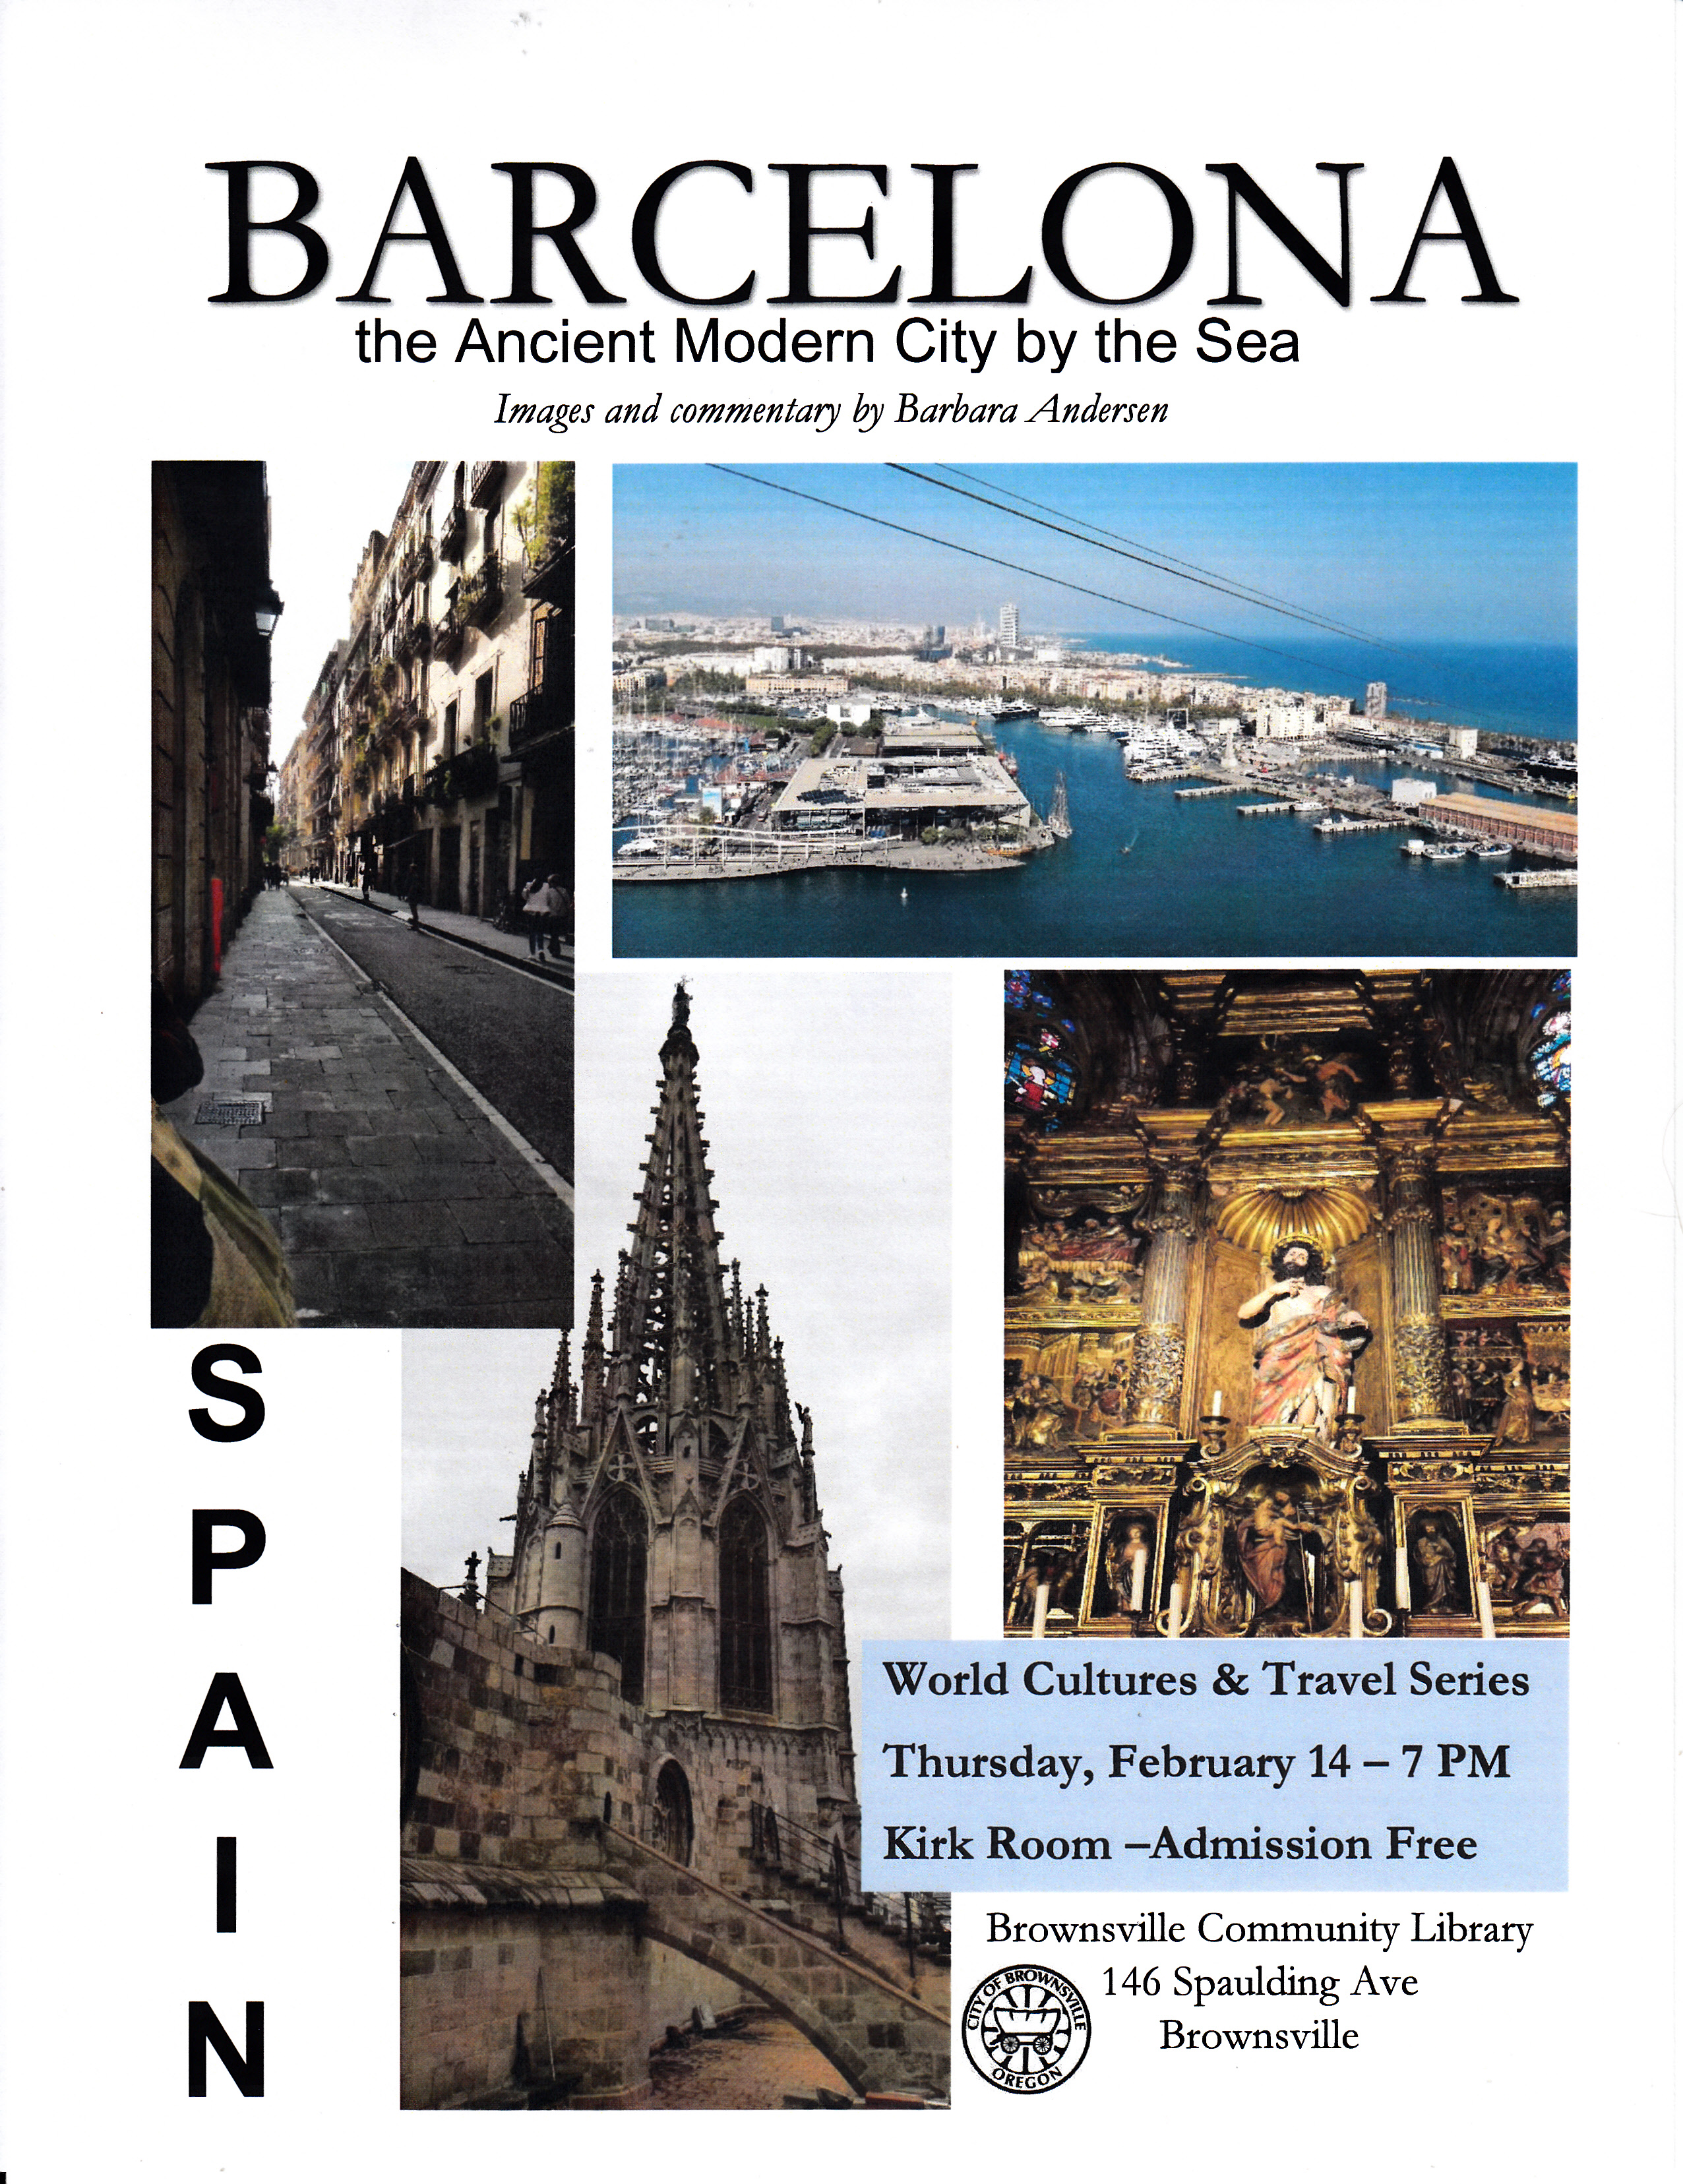 Barcelona Flyer.jpg